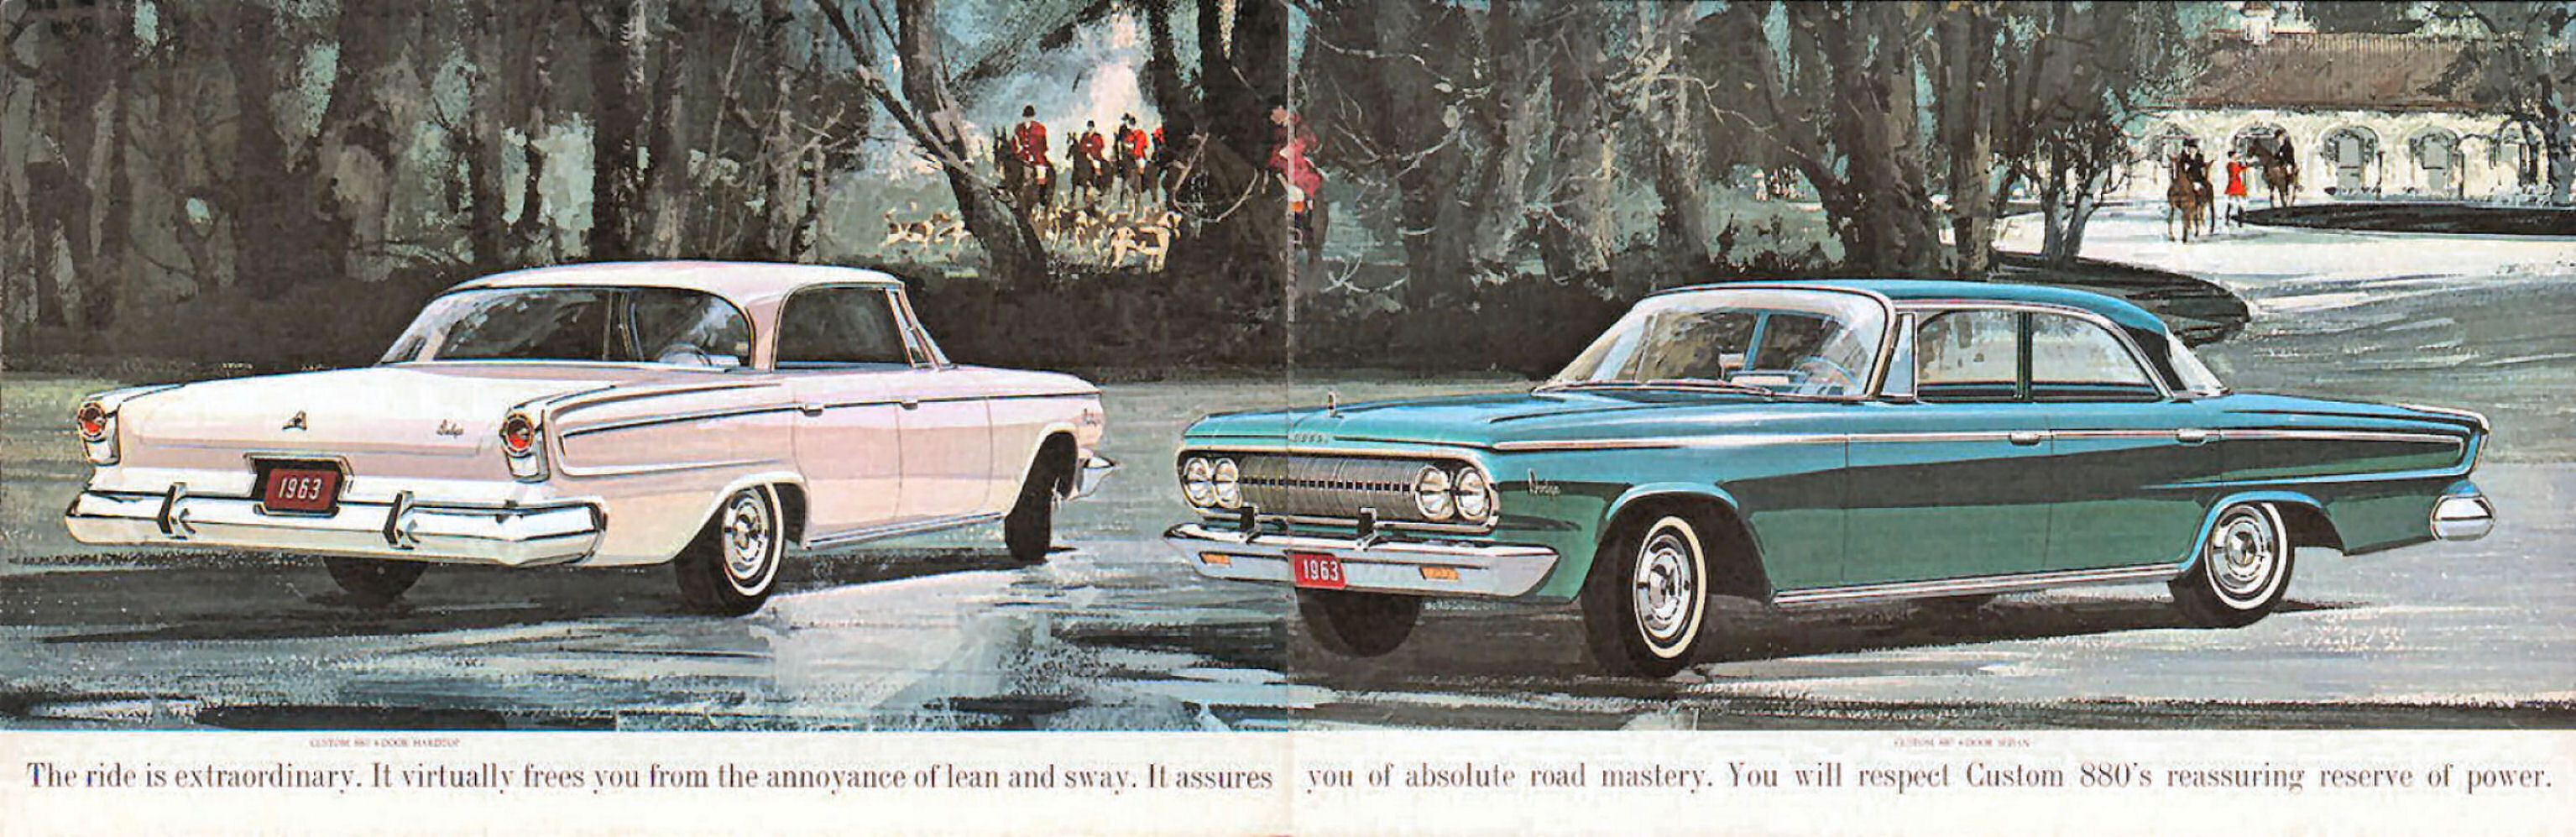 1963_Dodge_880_Sm-06-07